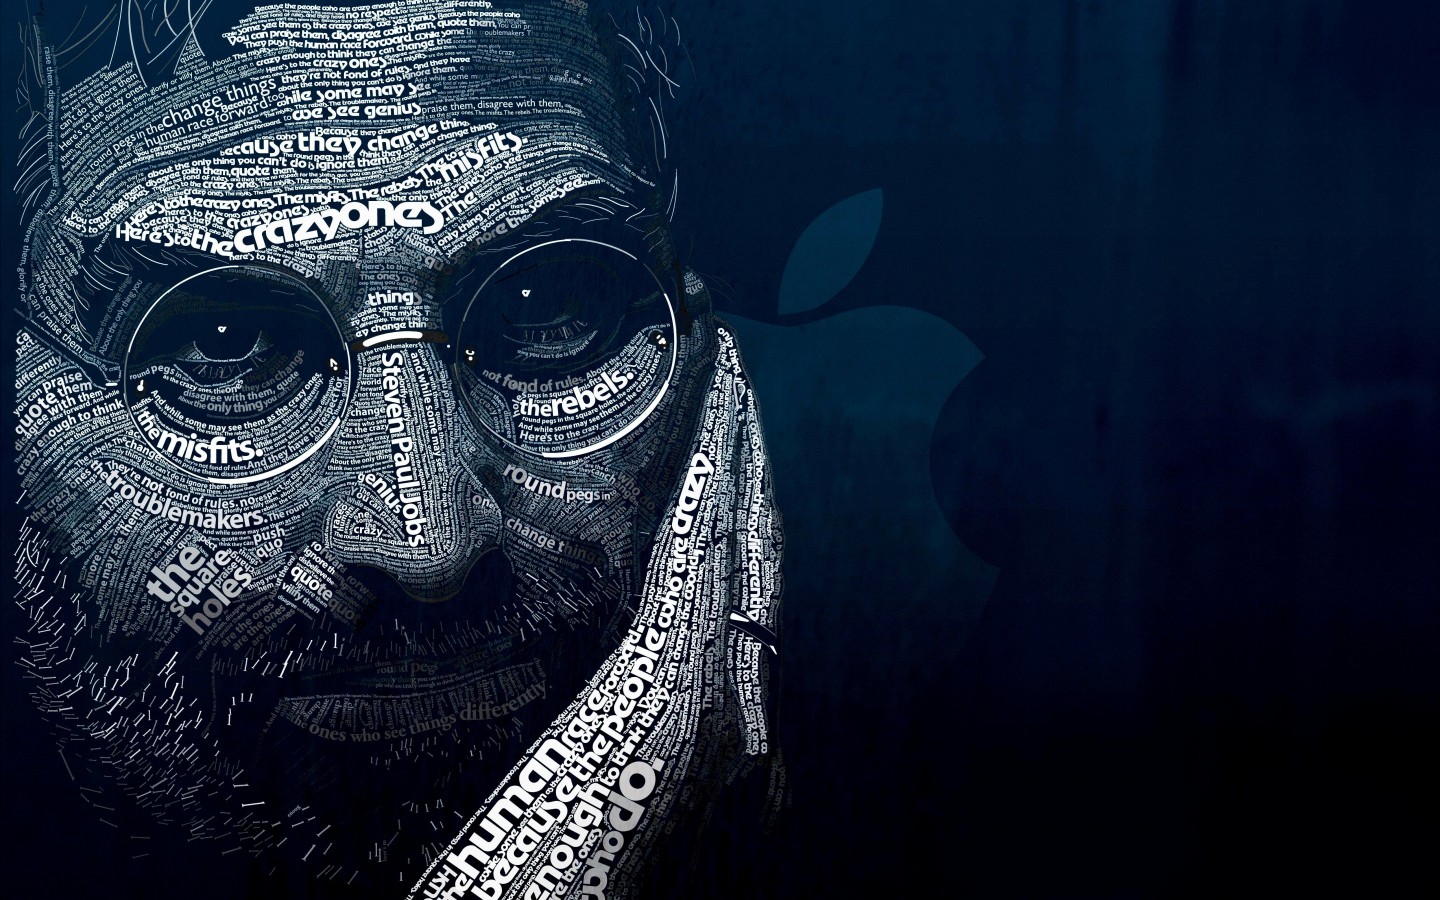 Steve Jobs Typographic Portrait Wallpaper for Desktop 1440x900